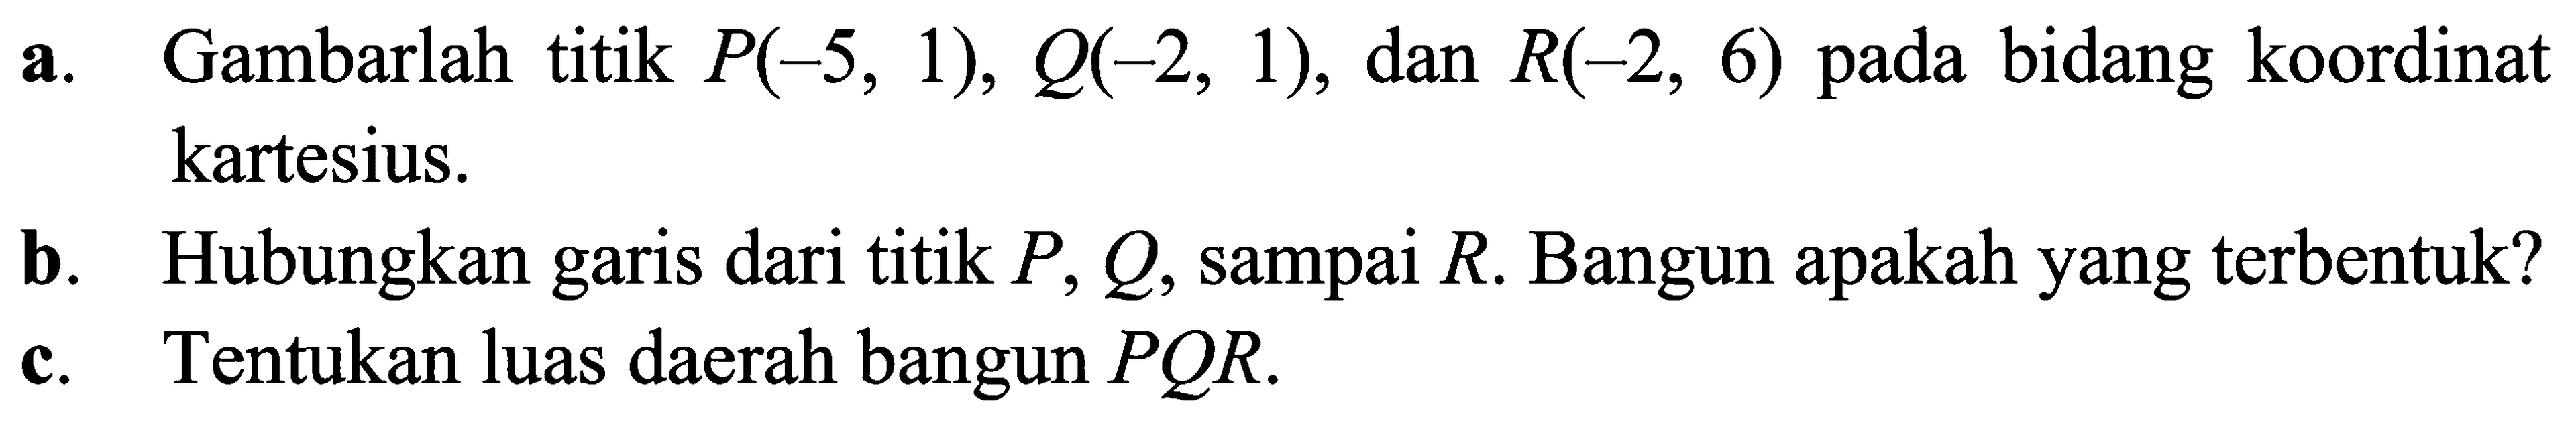 a. Gambarlah titik P(-5, 1), Q(-2, 1), dan R(-2, 6) pada bidang koordinat kartesius. b. Hubungkan garis dari titik P, Q, sampai R. Bangun apakah yang terbentuk? c. Tentukan luas daerah bangun PQR.